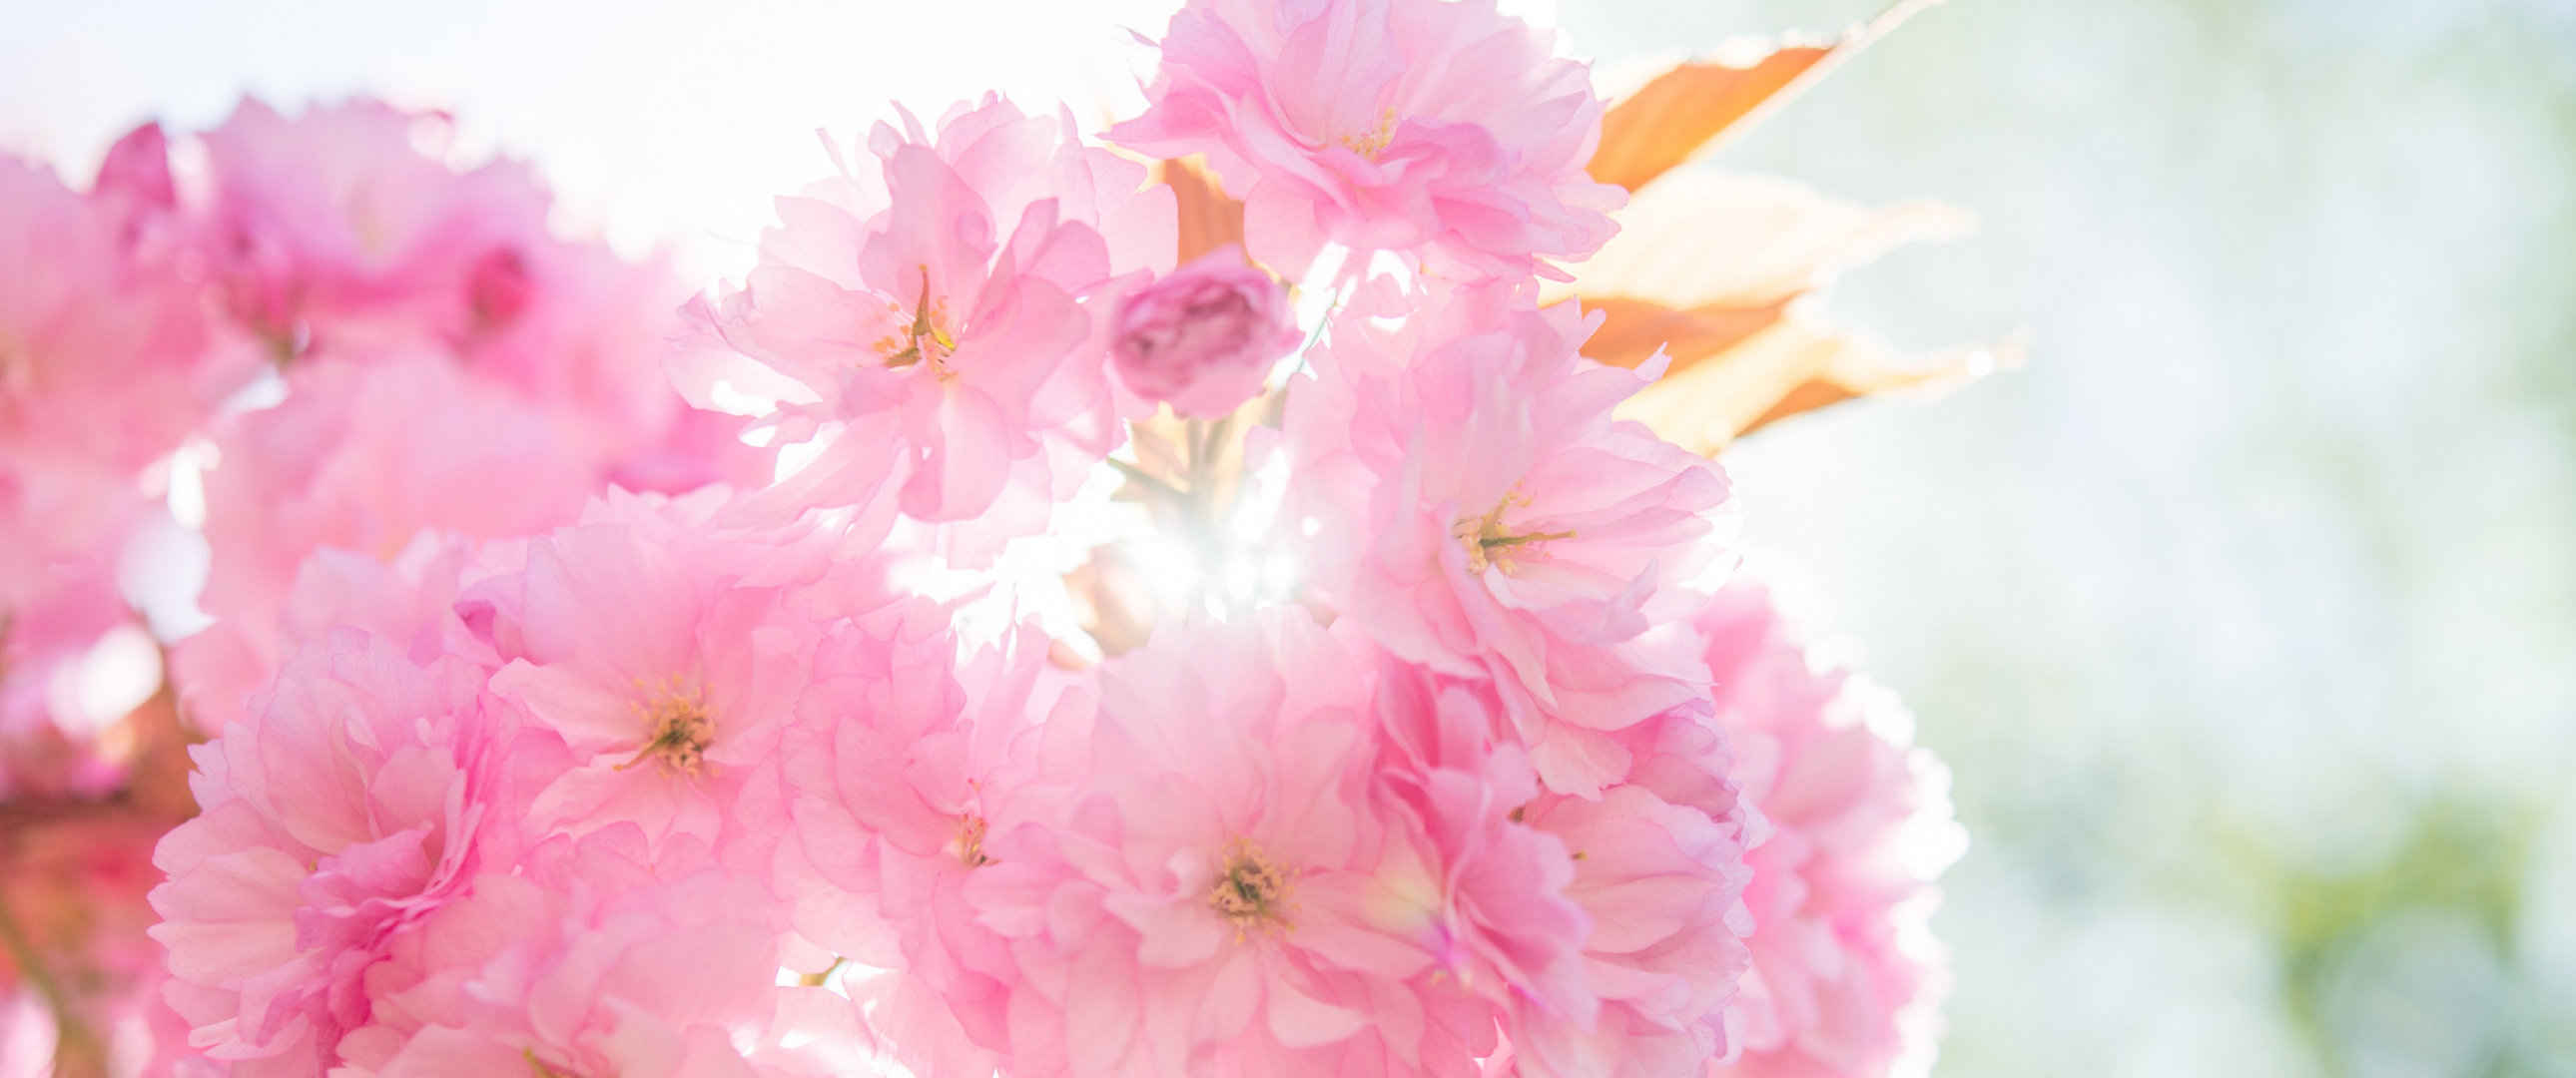 清新的粉红色关山樱花朵图片-